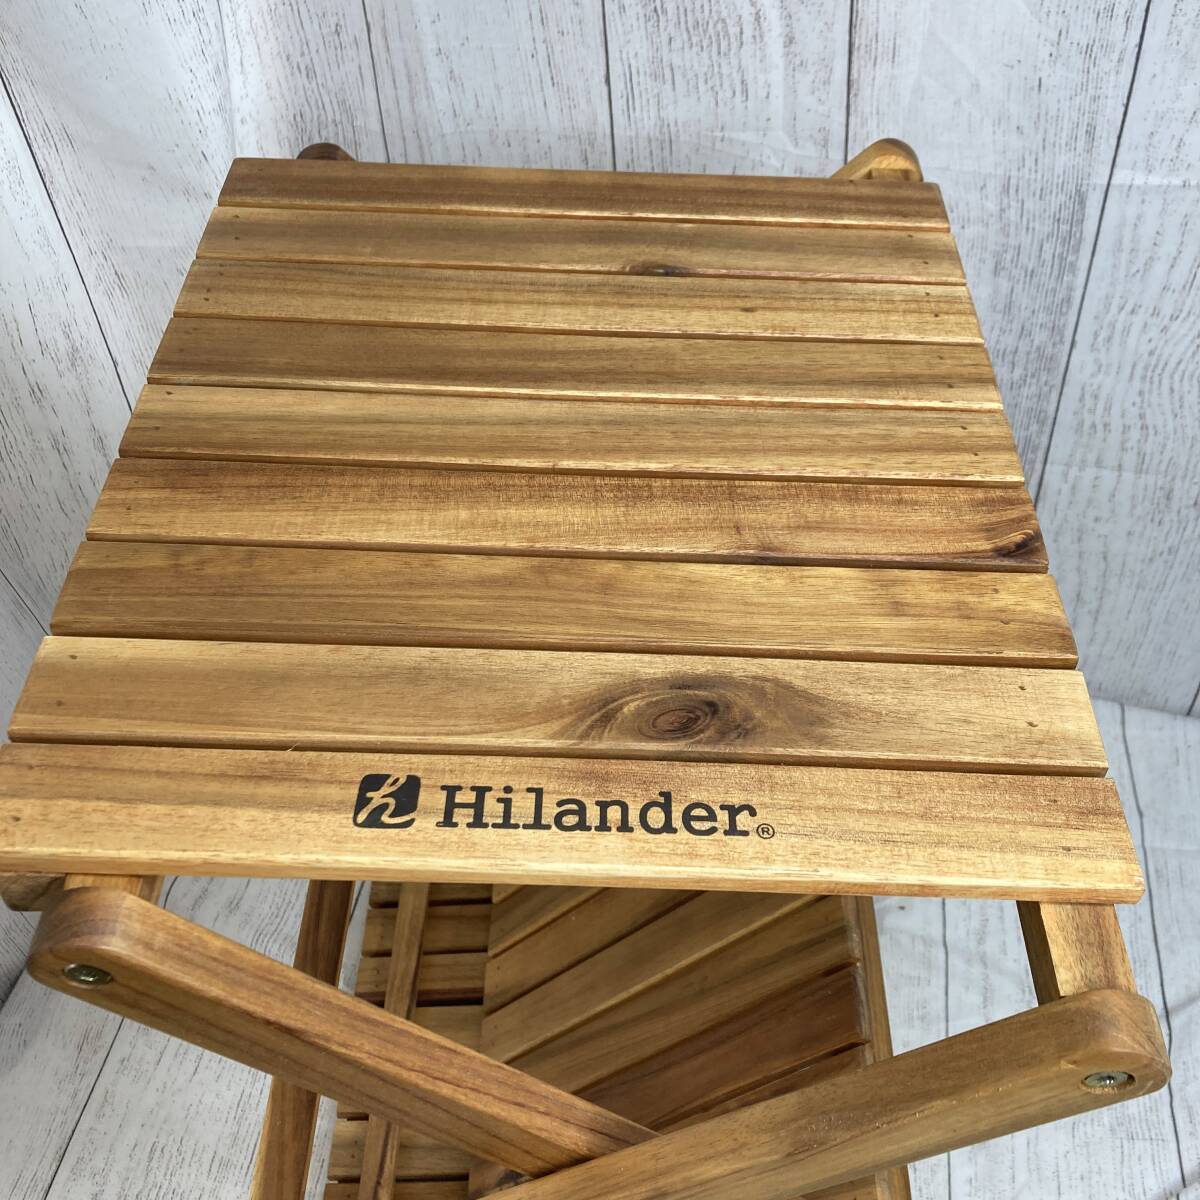 【新品未開封】Hilander(ハイランダー) ウッドラック 3段 専用ケース付き 木製ラック 425 HCTT-001 /Y21777-V3